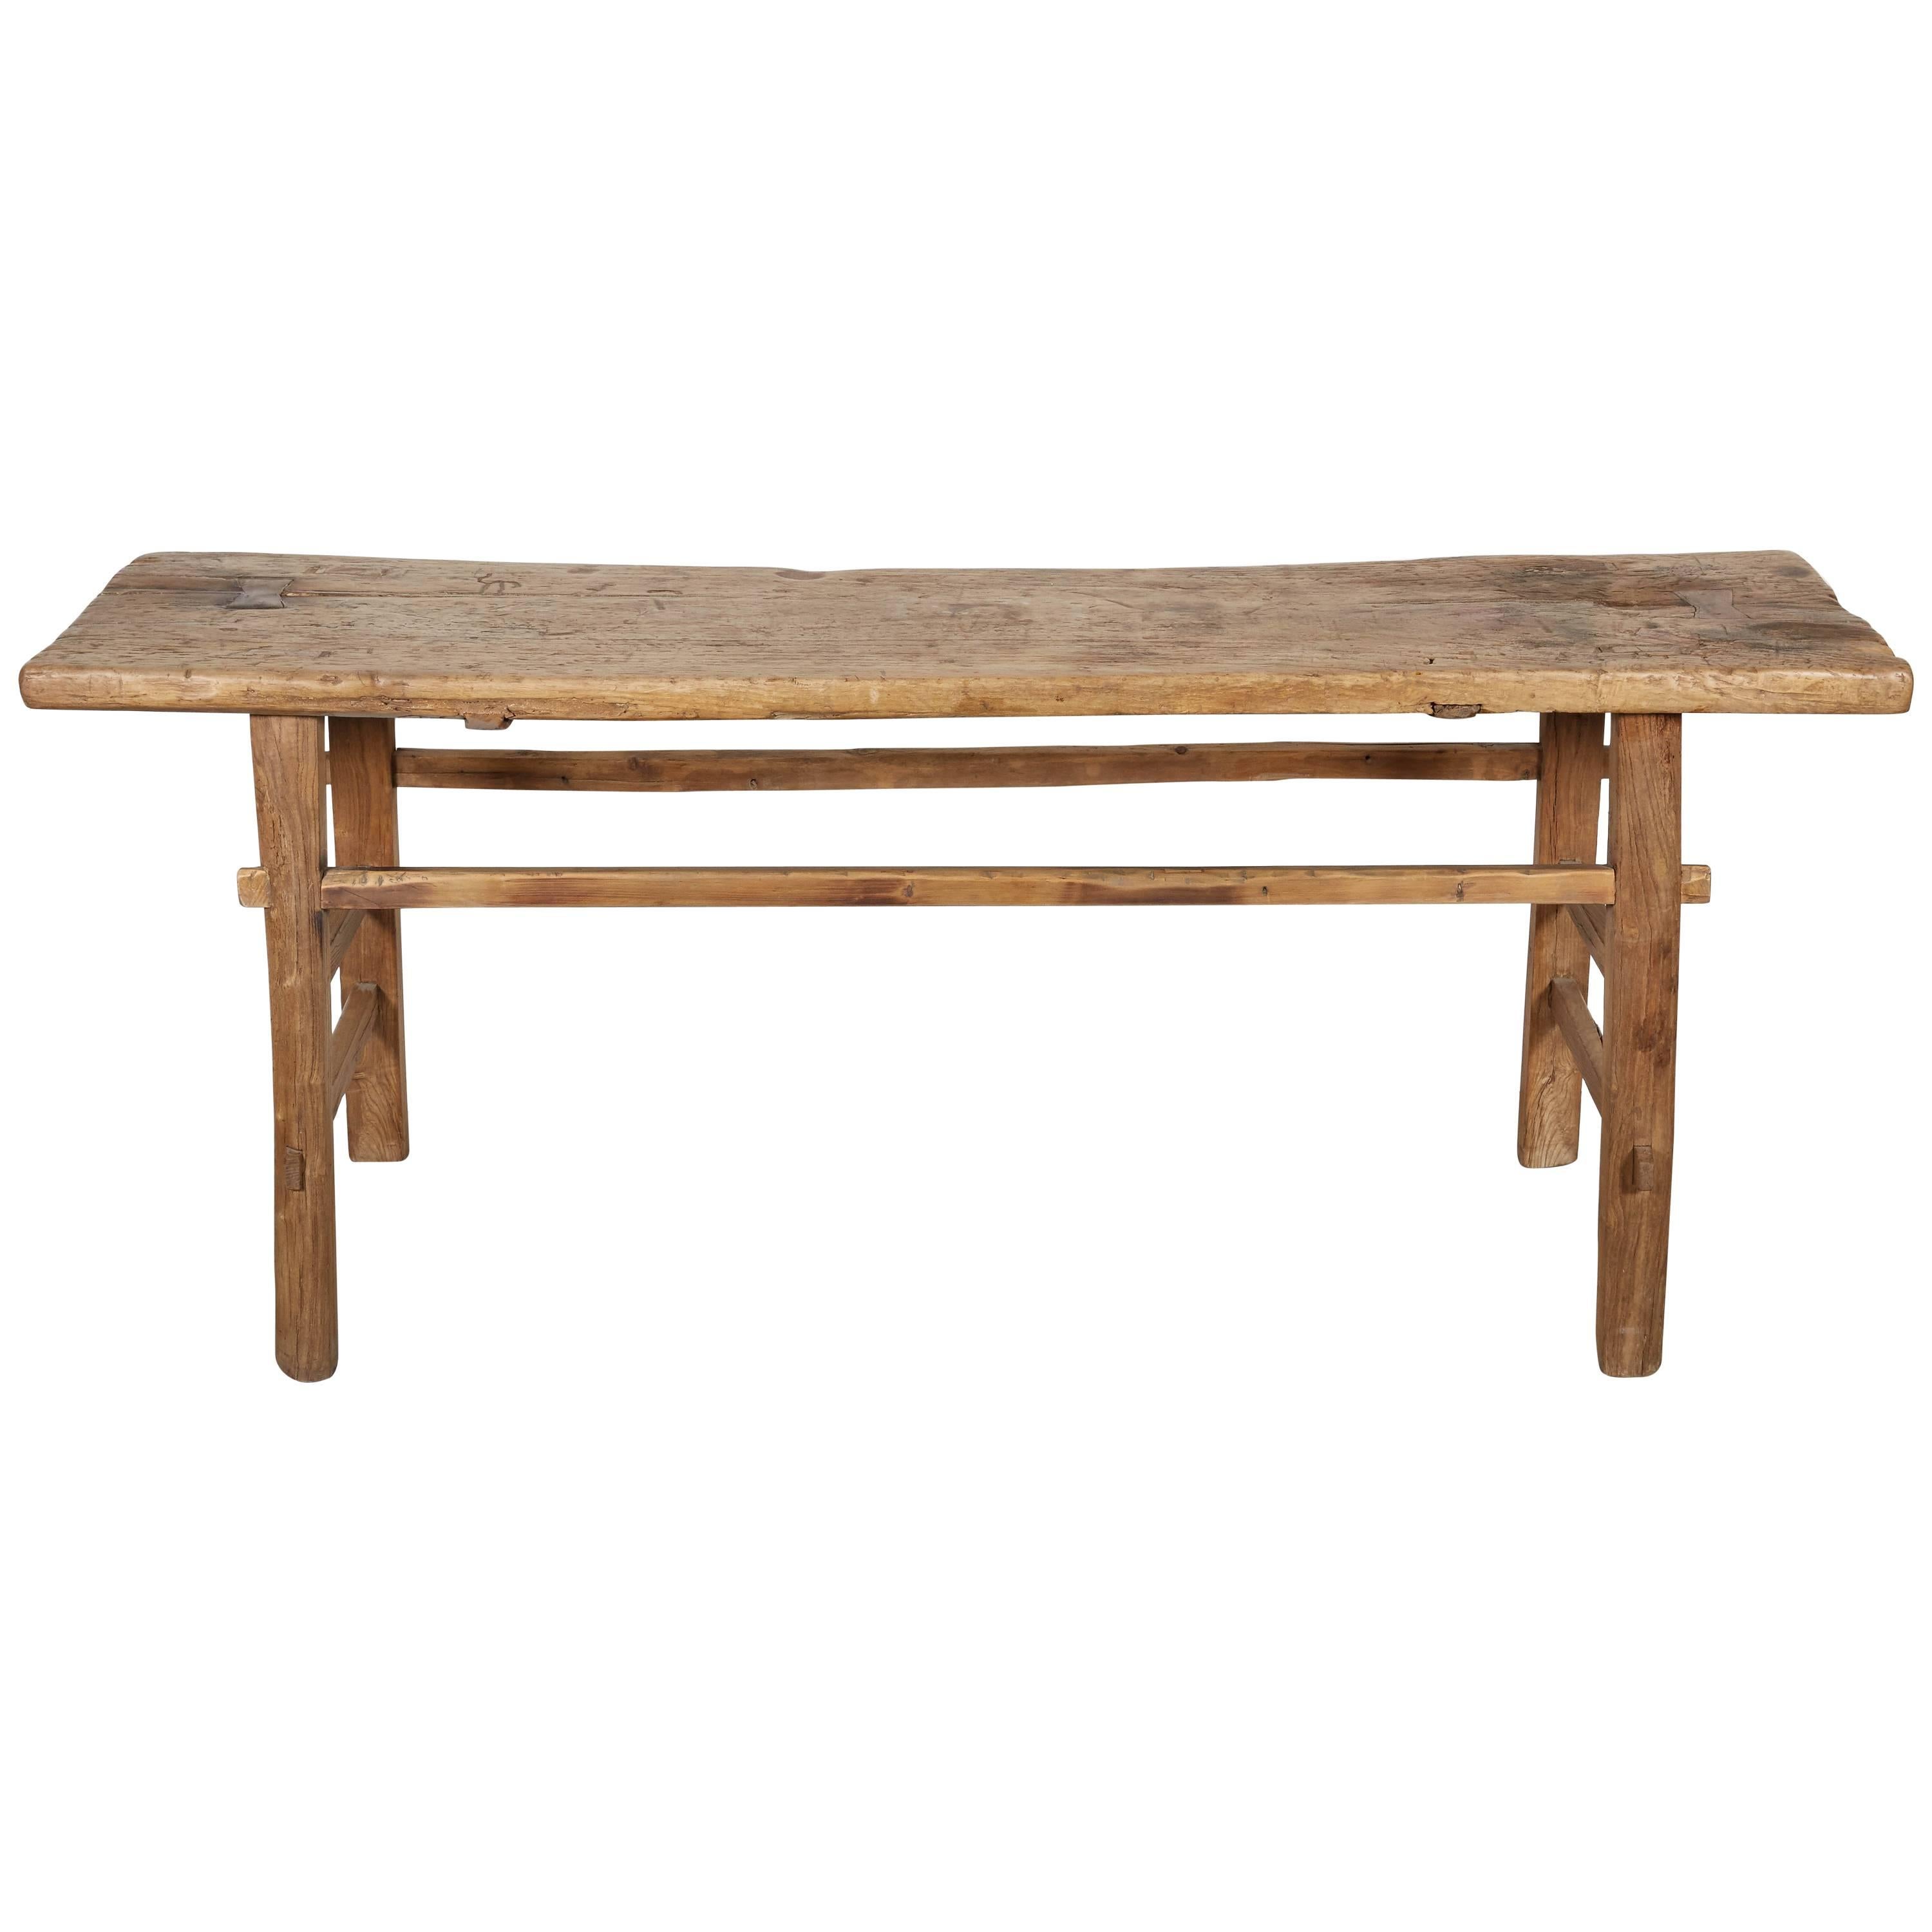 Simple Primitive Antique Farm Table